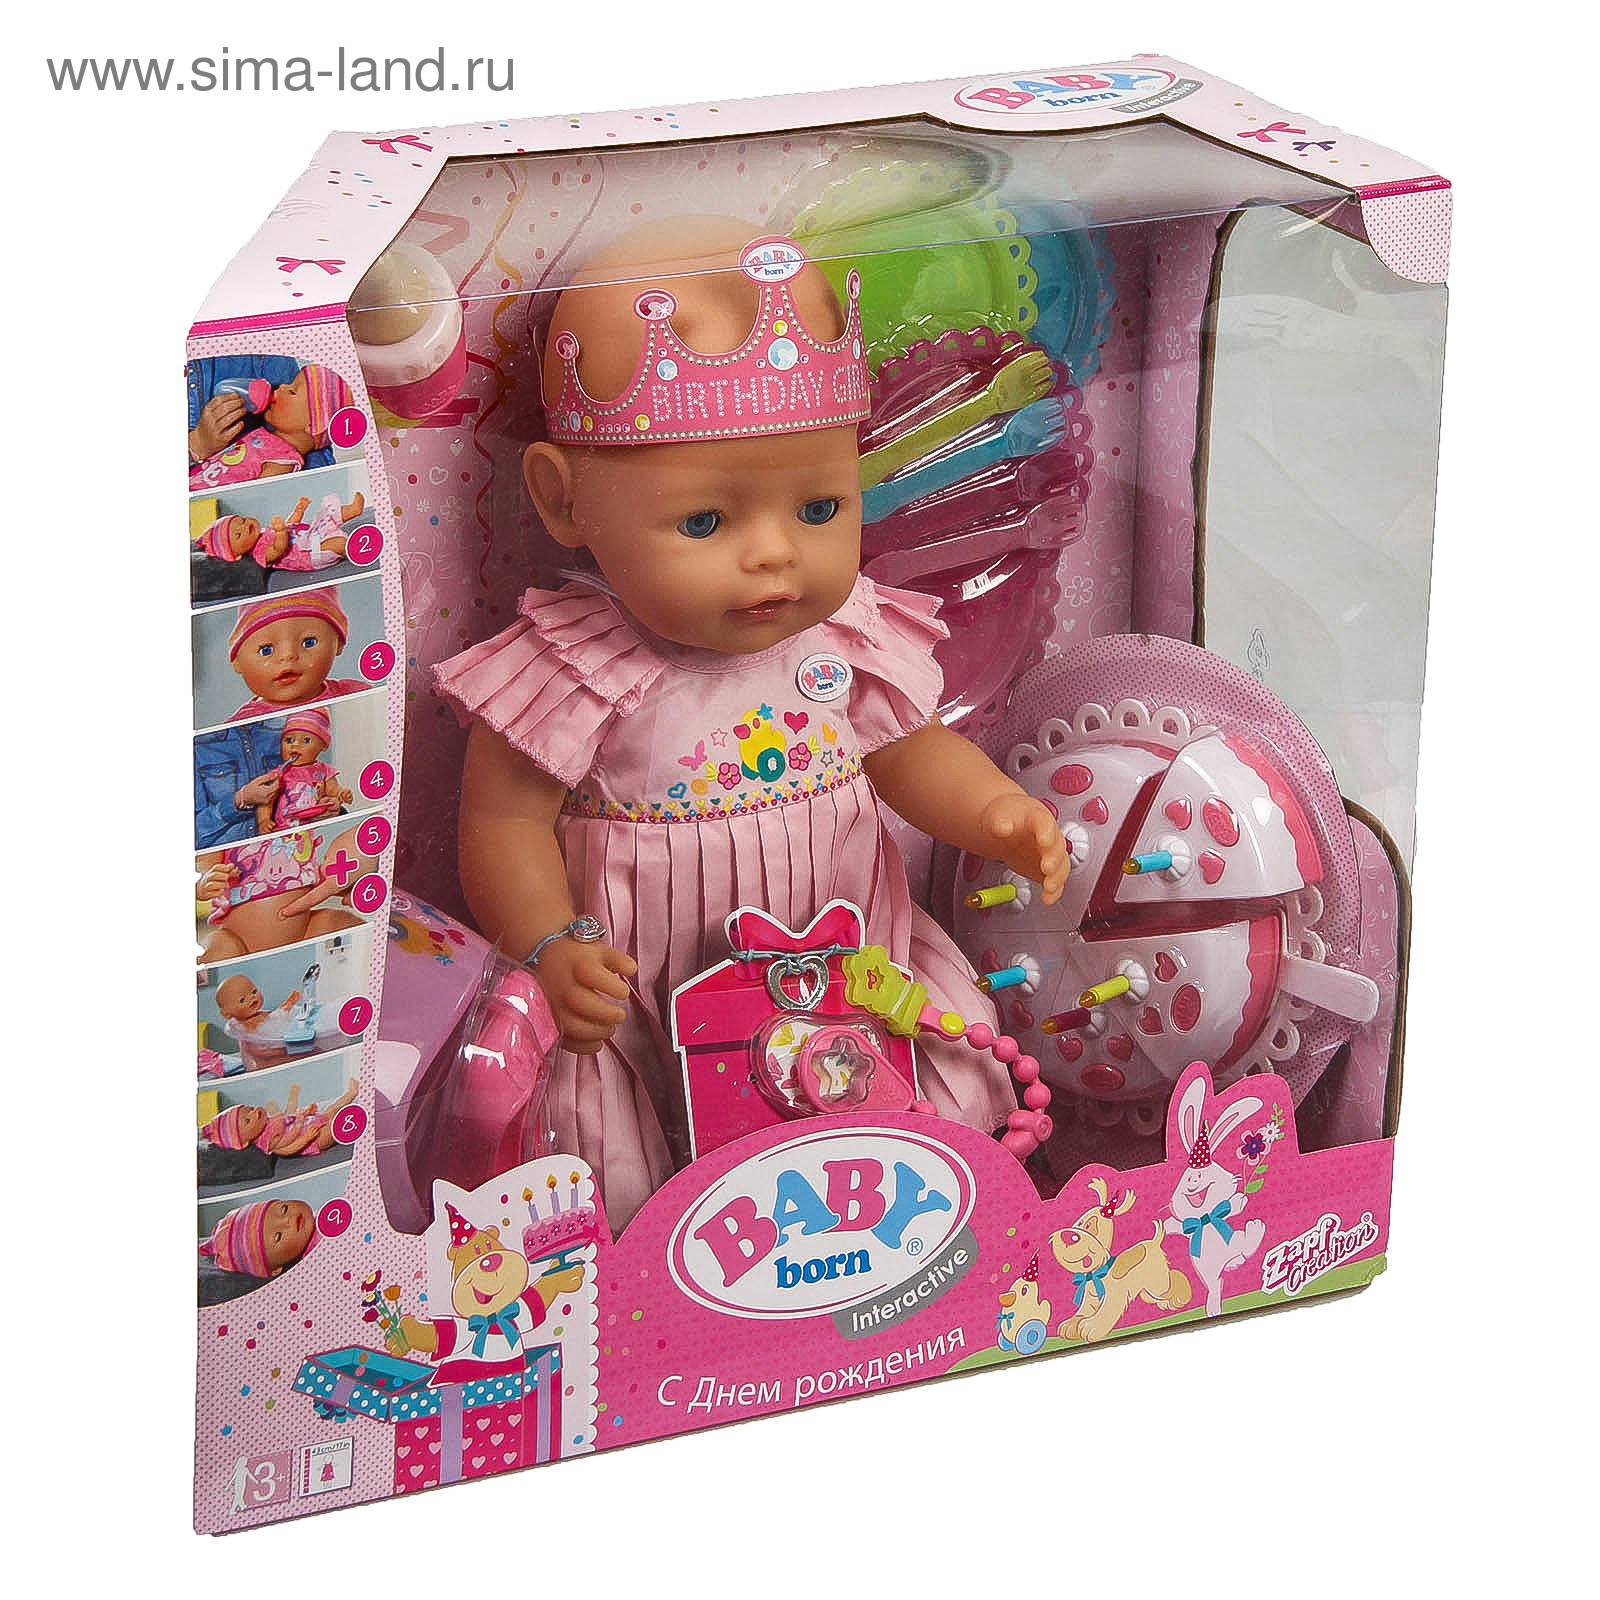 Интерактивная кукла Zapf Creation Baby born нарядная с тортом, 43 см, 825-129